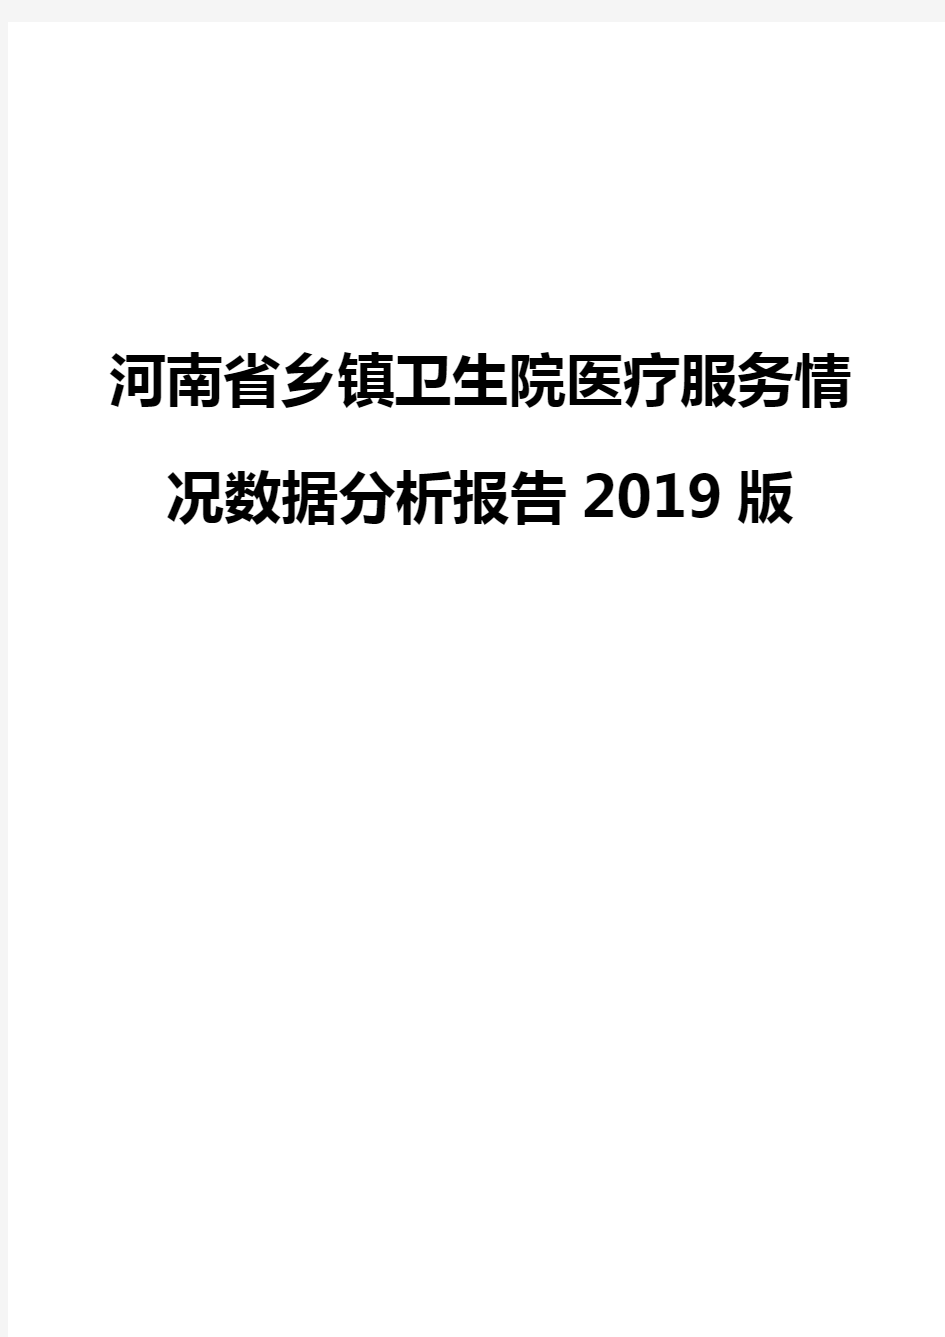 河南省乡镇卫生院医疗服务情况数据分析报告2019版